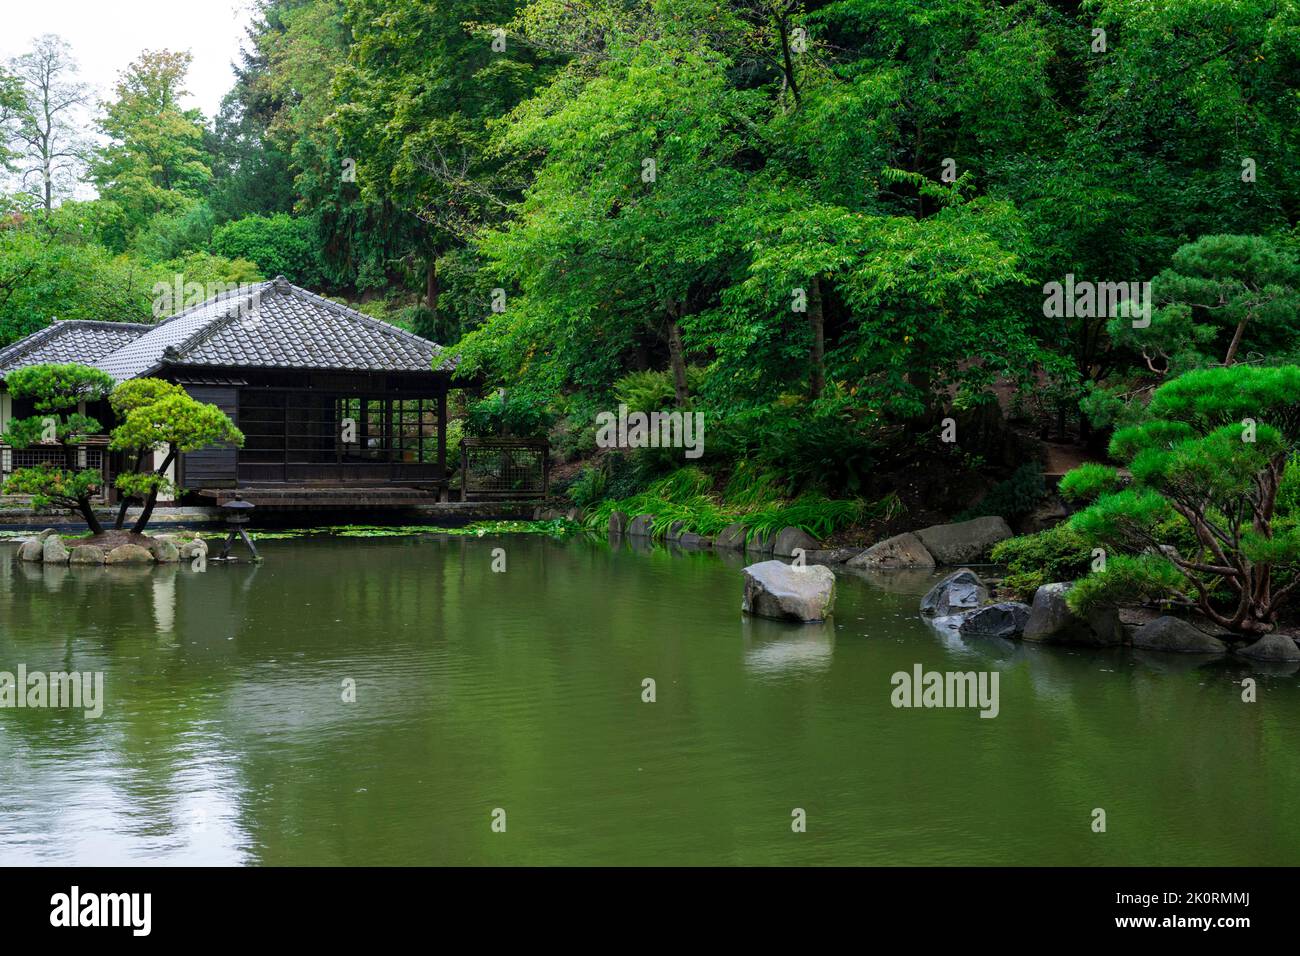 The Japanese garden in Kaiserslautern/Germany Stock Photo